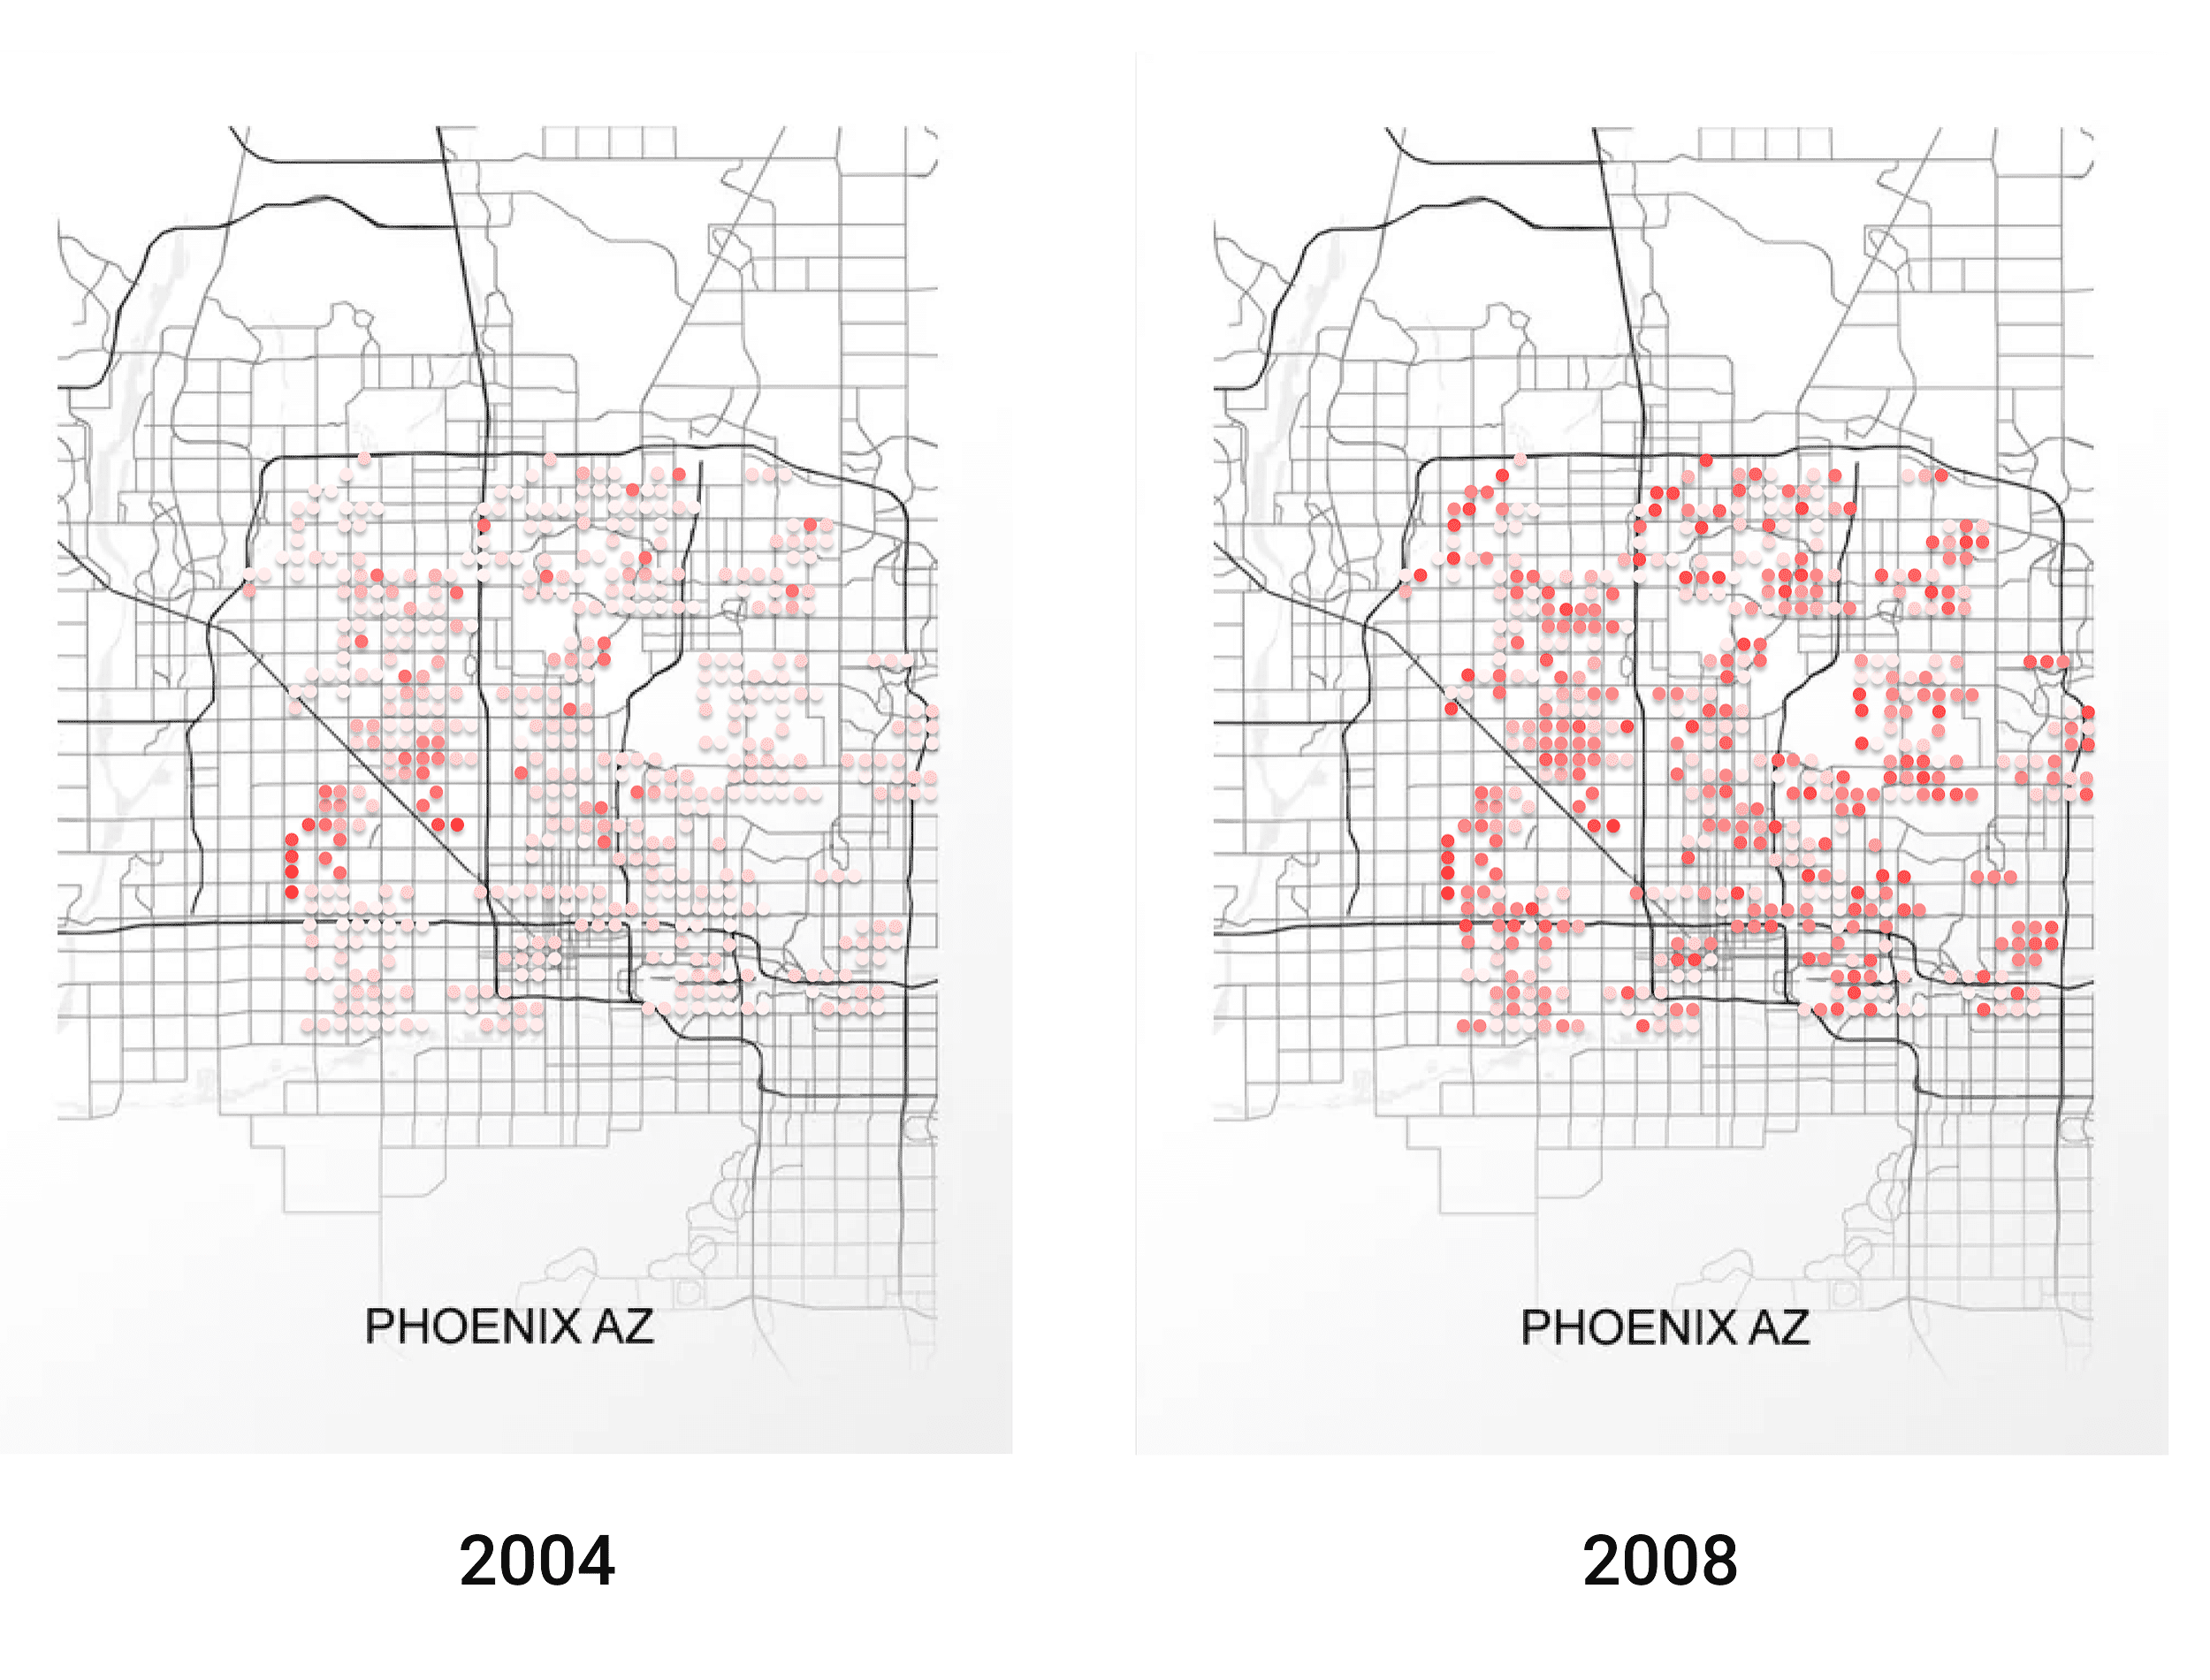 Figura: El precio cambia con el tiempo. Cuanto más rojos son los puntos, más caras son las casas.